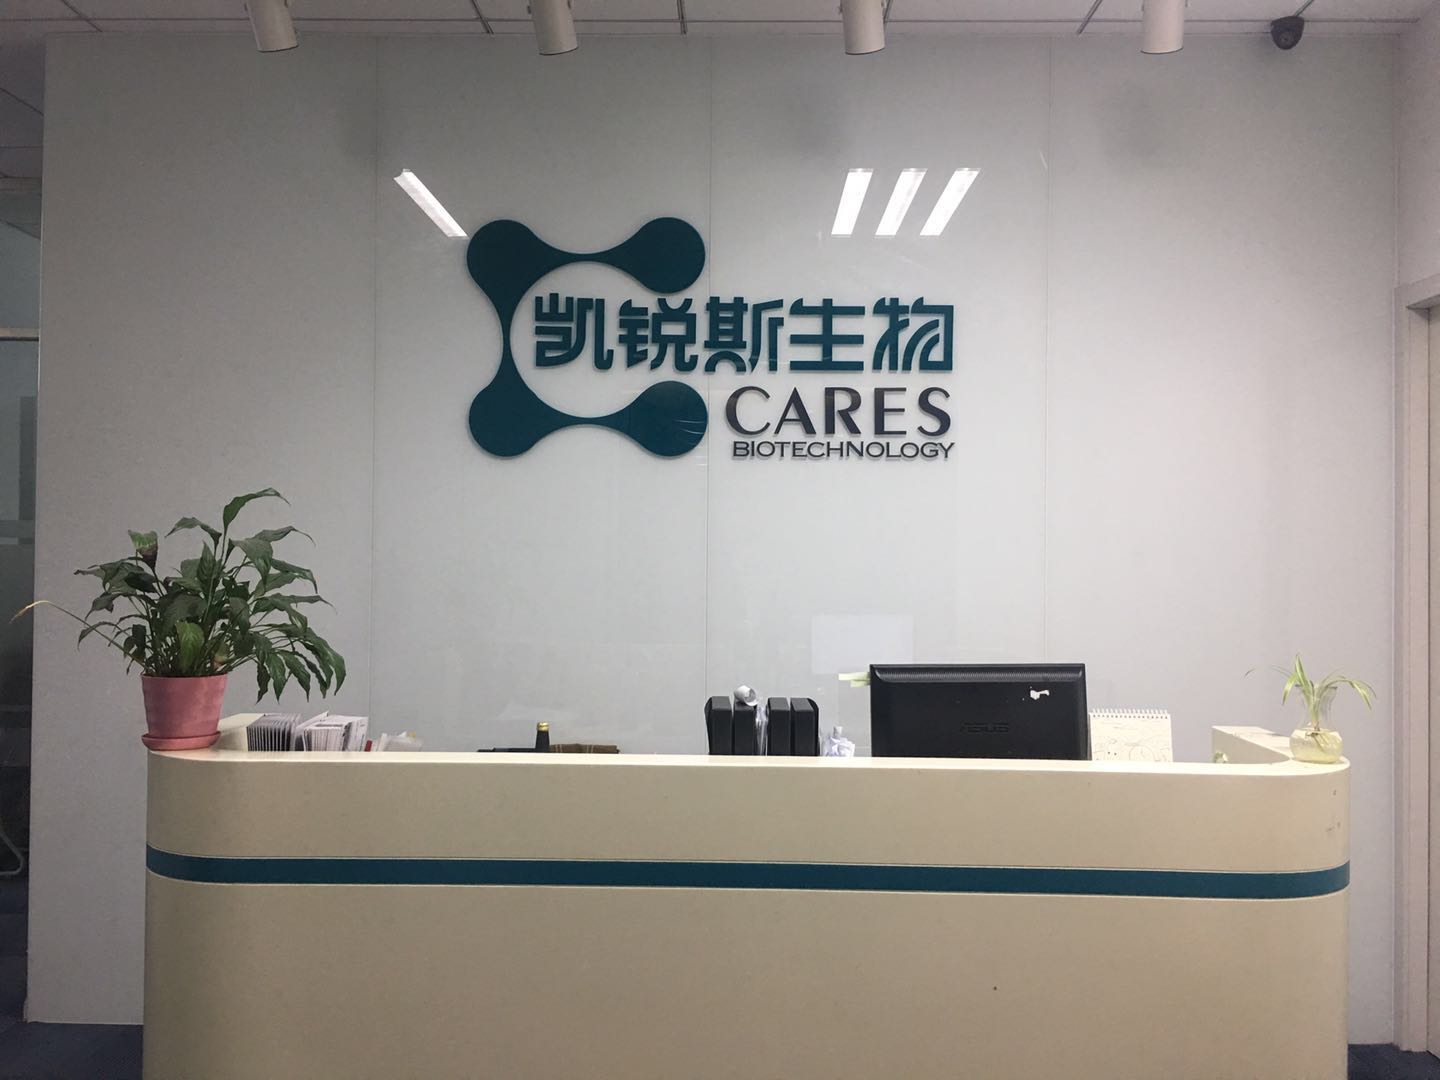 上海凯锐斯生物科技有限公司